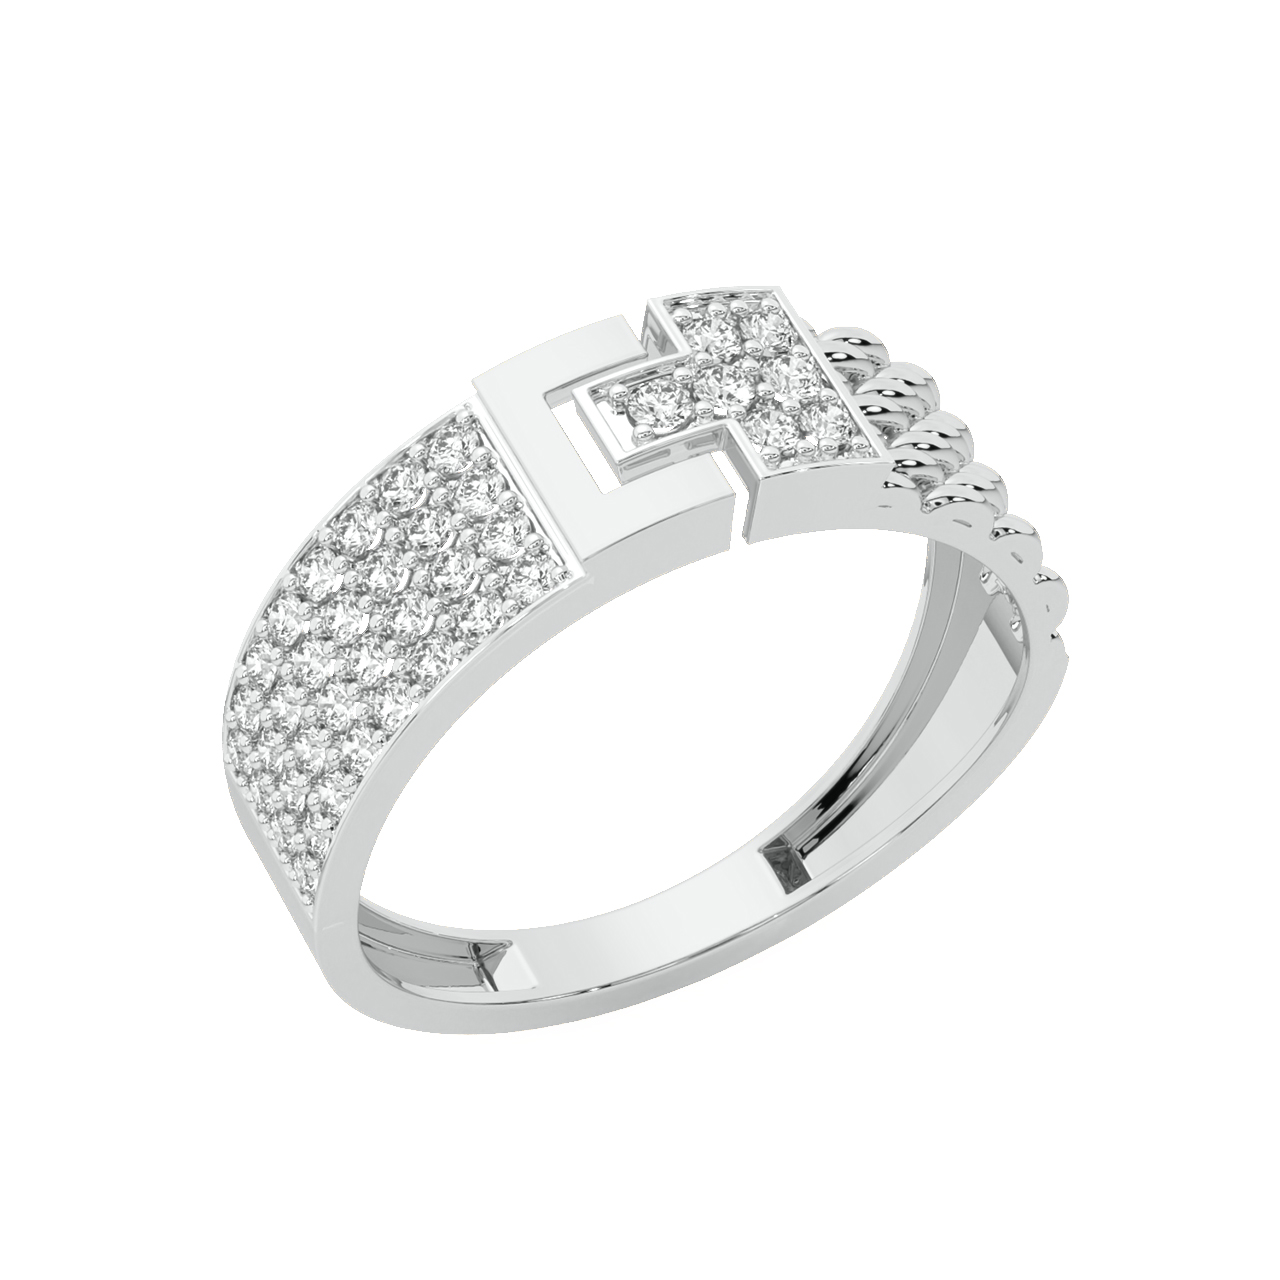 Felix Round Diamond Ring For Men